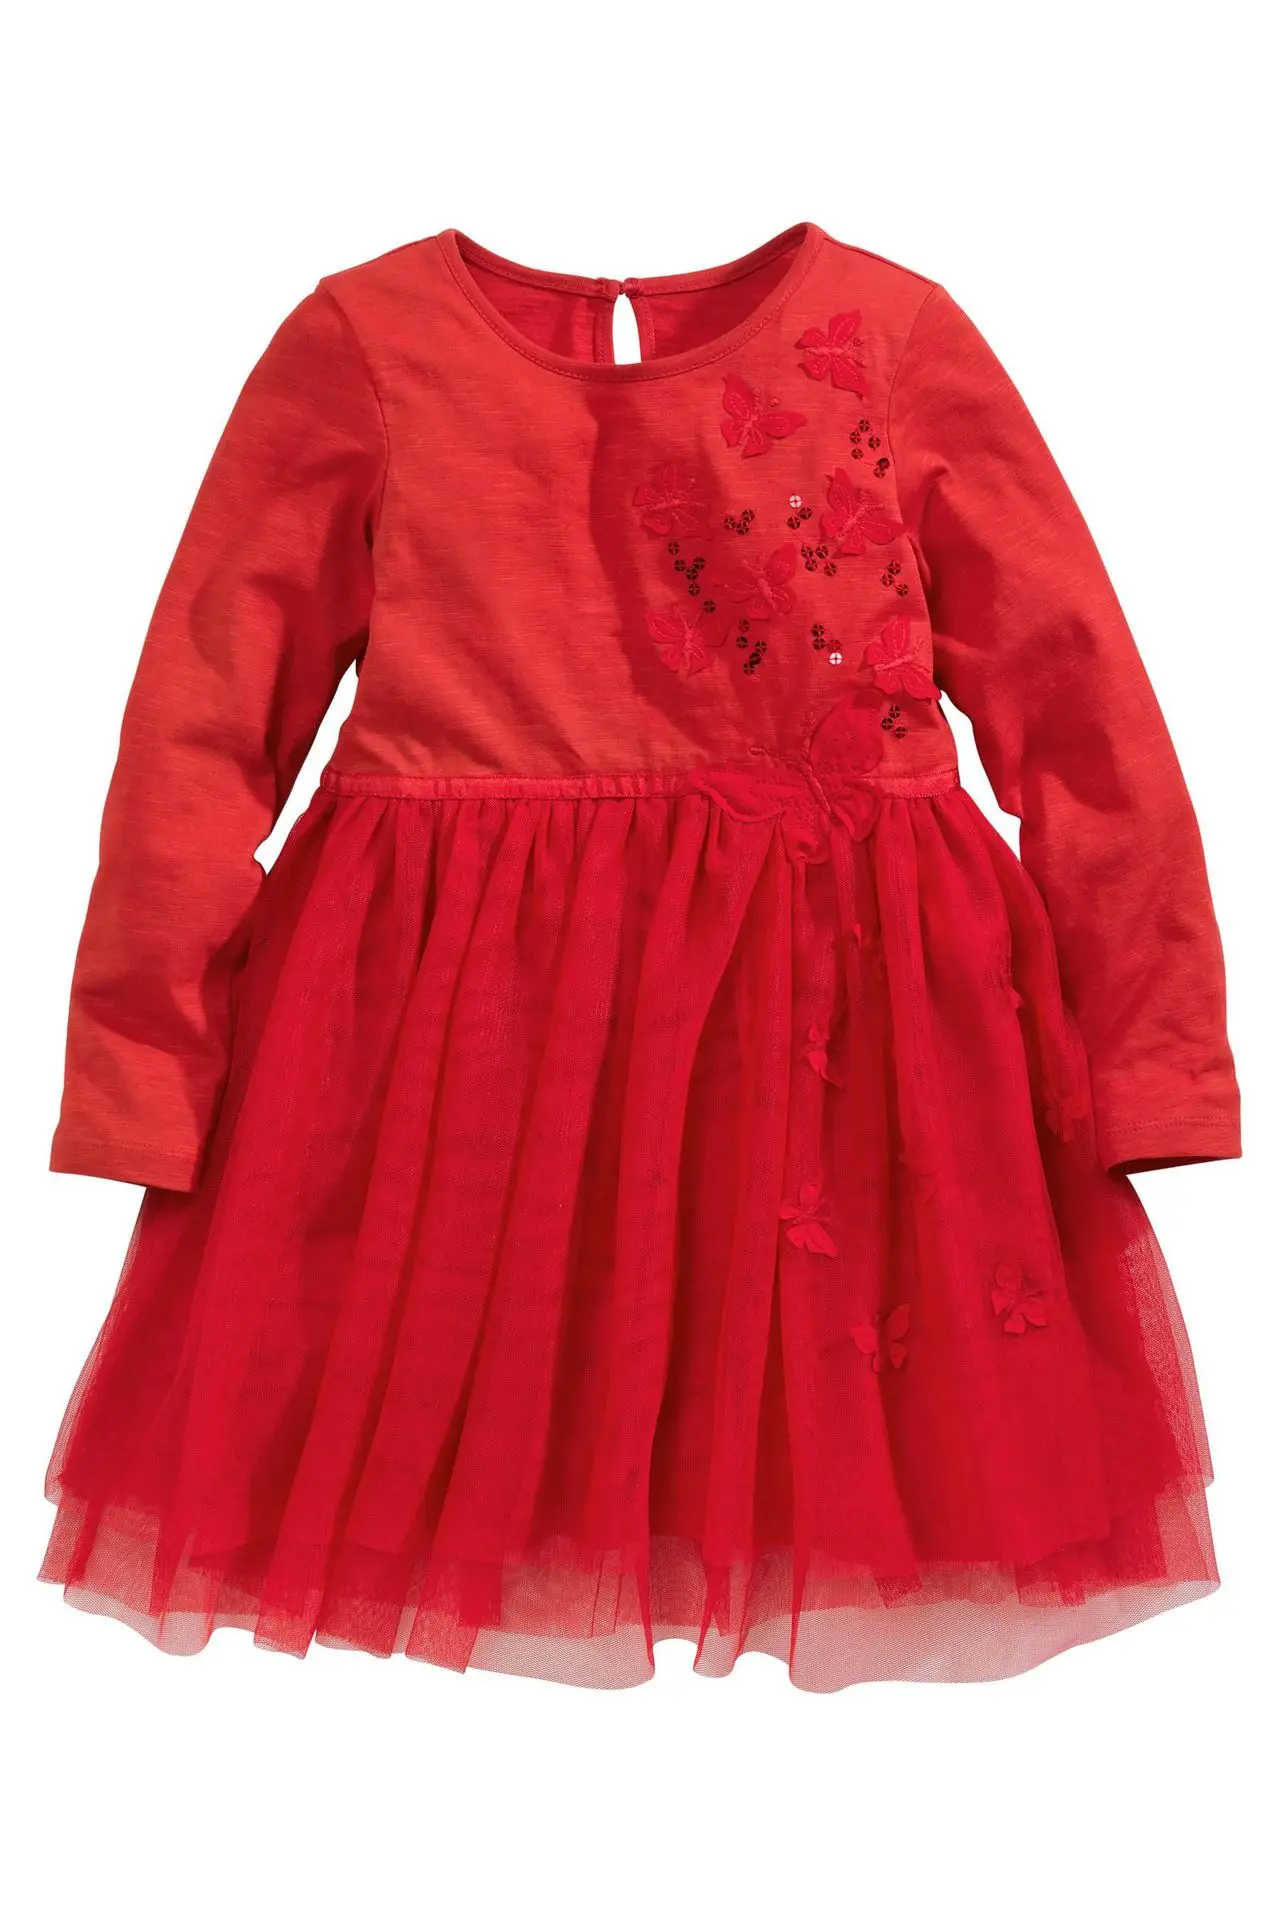 1 шт. Высокое качество Детские платье для девочек Дети Бабочка Гренадин пайетками вечерние красное платье Длинные рукава с круглым вырезом